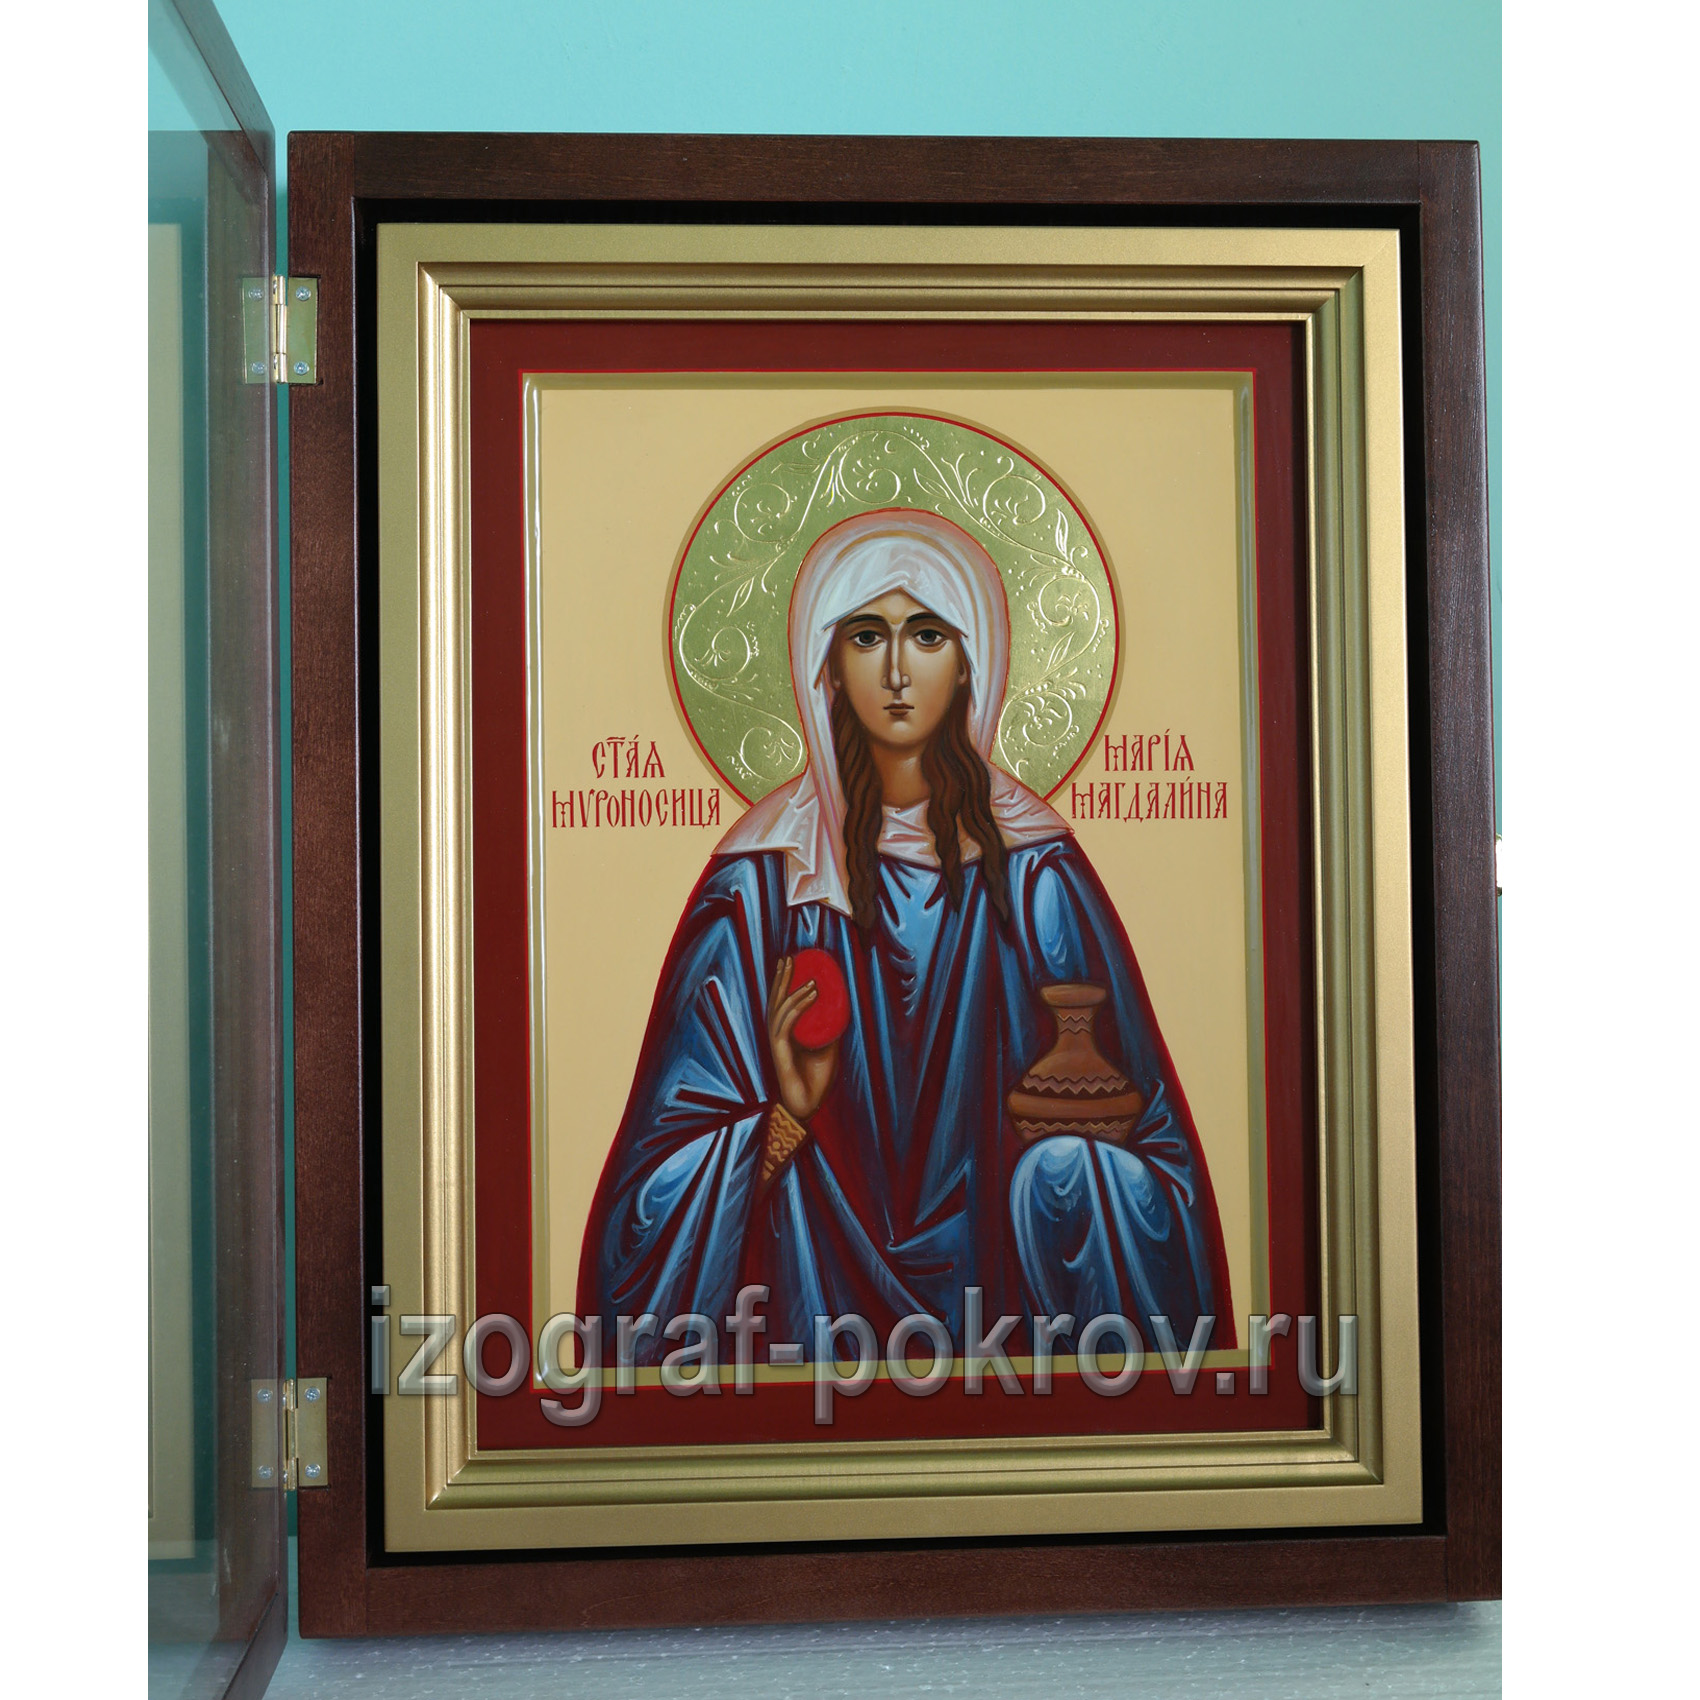 Икона Мария Магдалина с узорчатым золотым нимбом